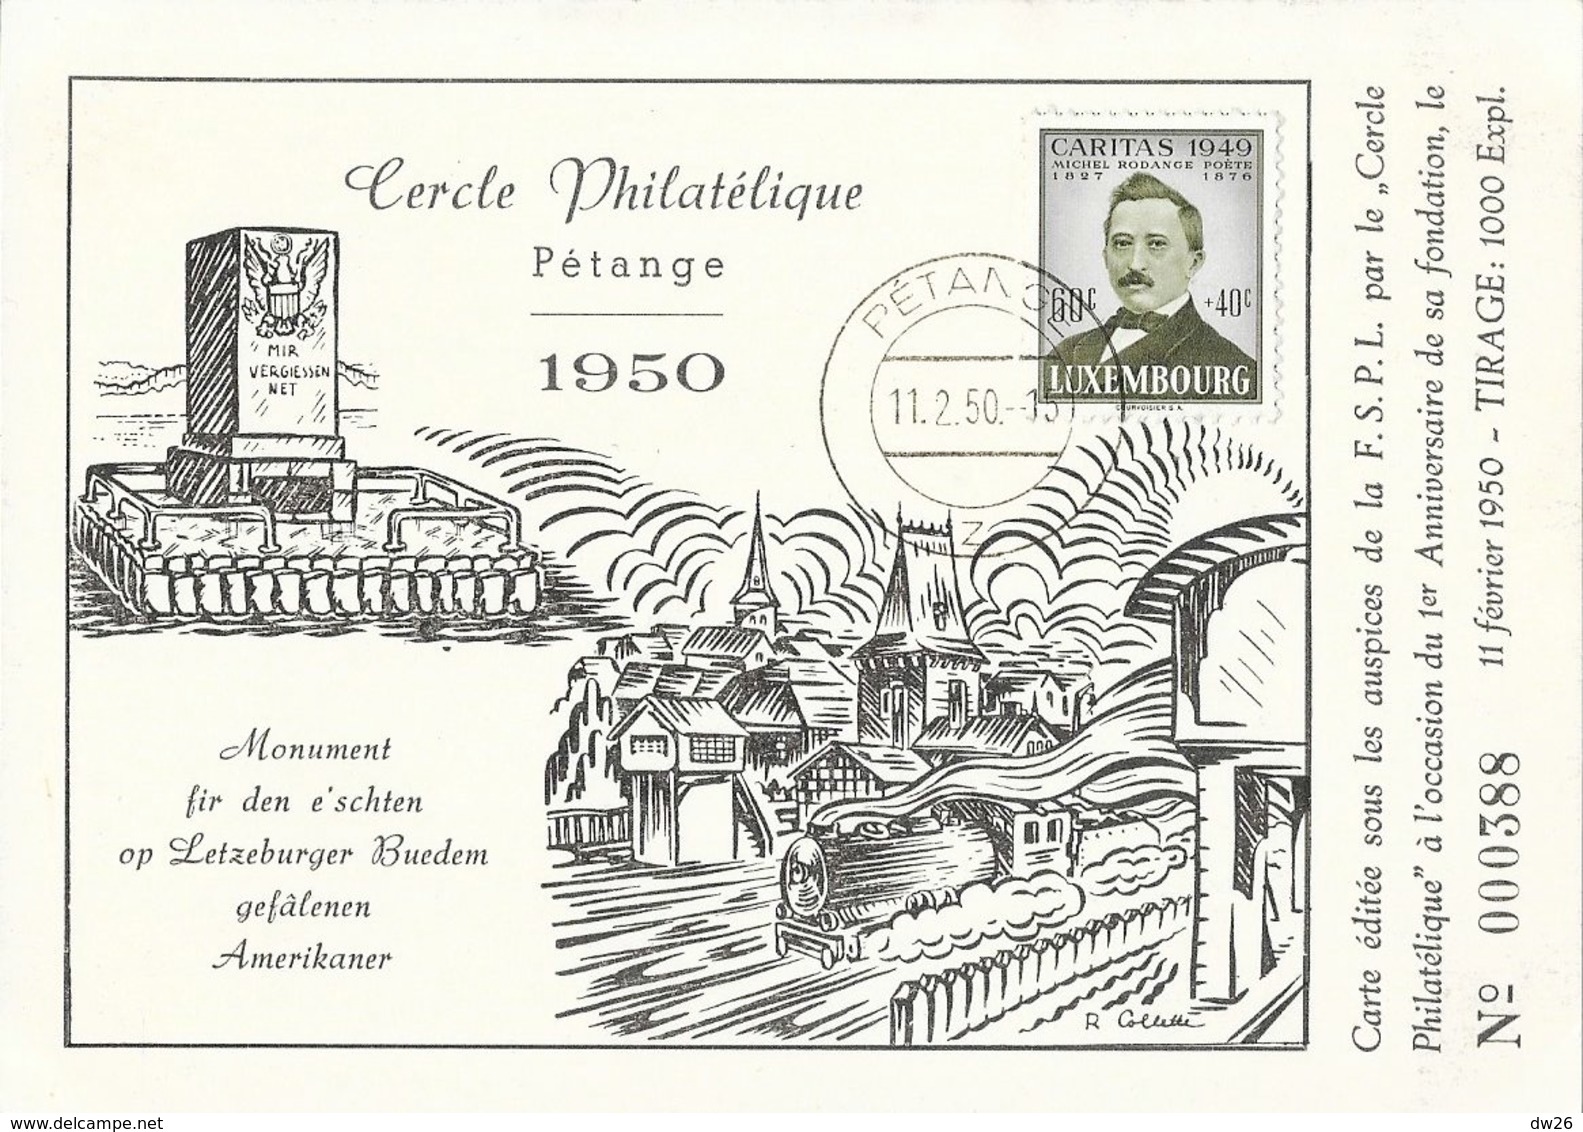 Luxembourg - Cercle Philatélique Pétange 1950 - Timbre Caritas 1949 60c + 40c (1er Anniversaire De La Fondation) - Covers & Documents